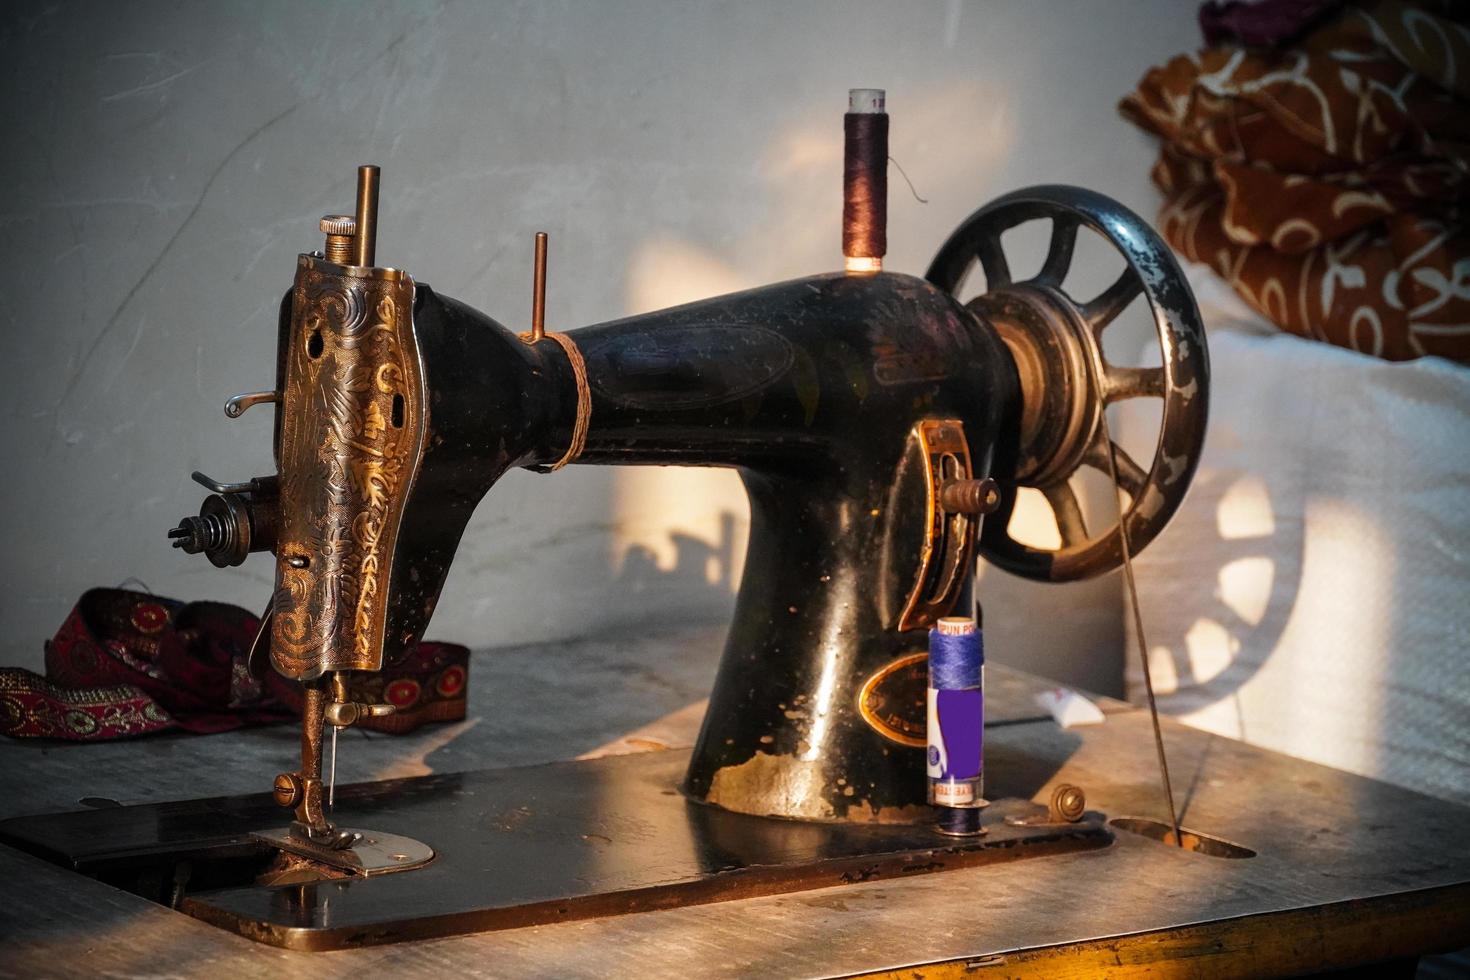 imagen de máquina de coser, en una casa de mujer pobre india foto